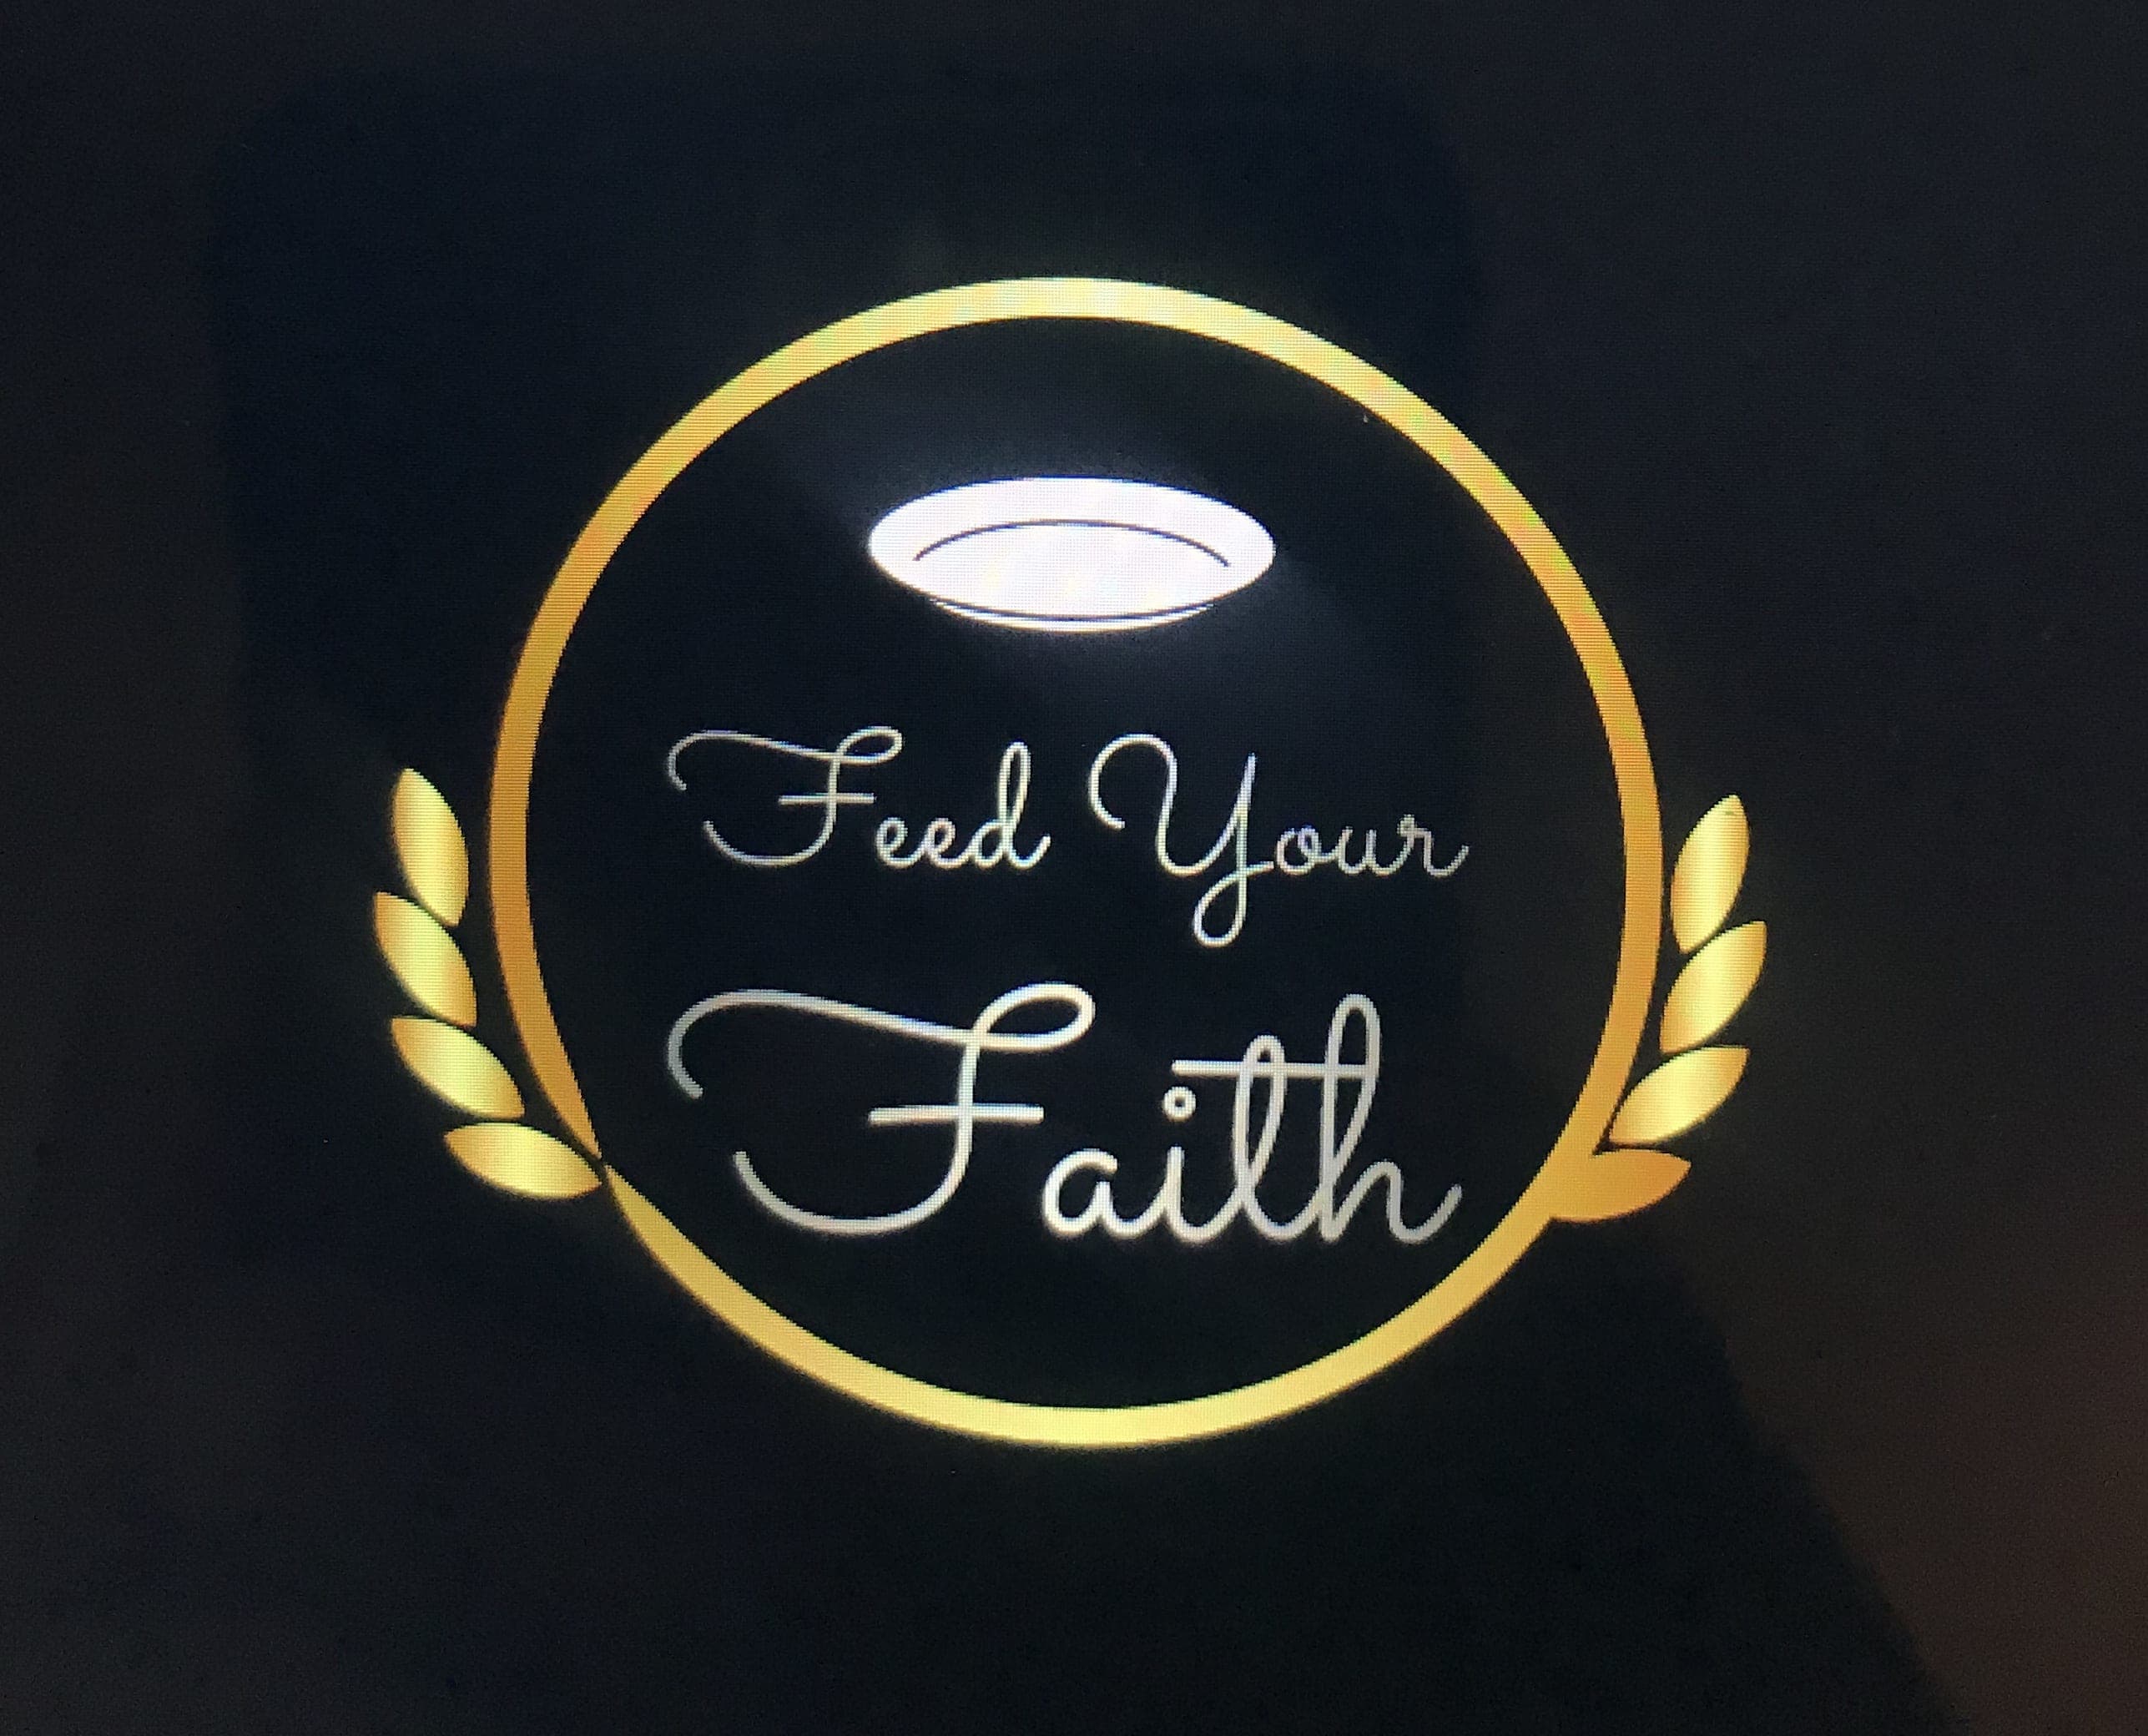 Feed Your Faith